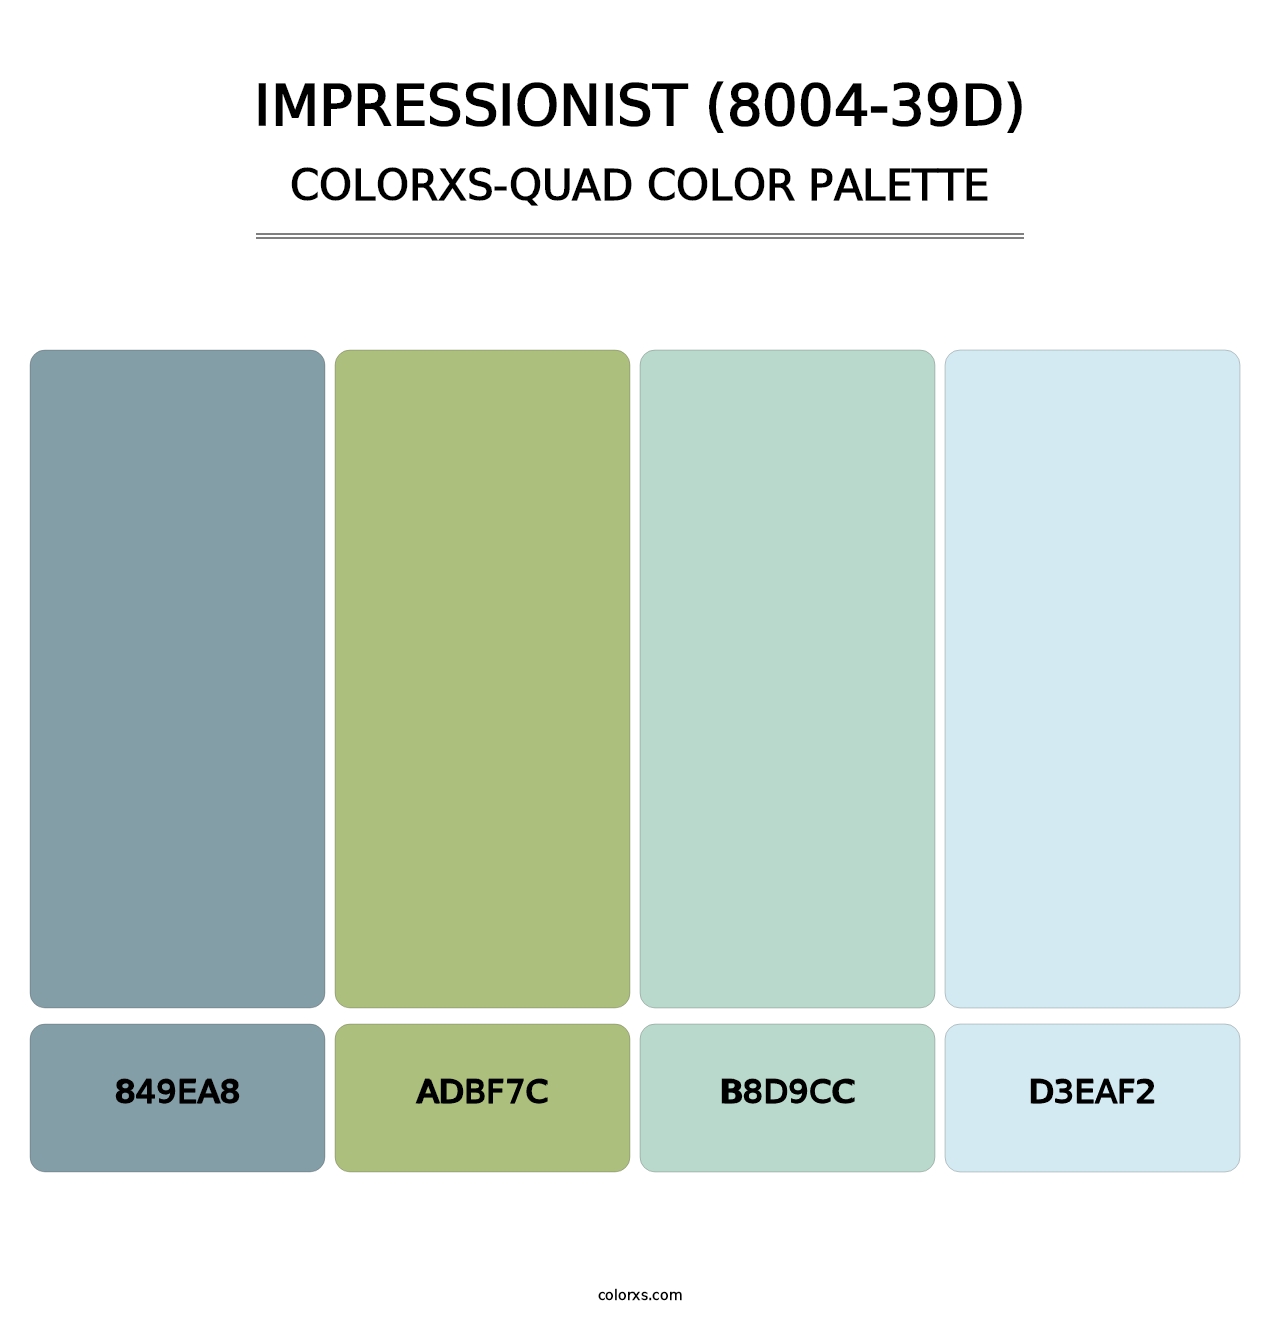 Impressionist (8004-39D) - Colorxs Quad Palette